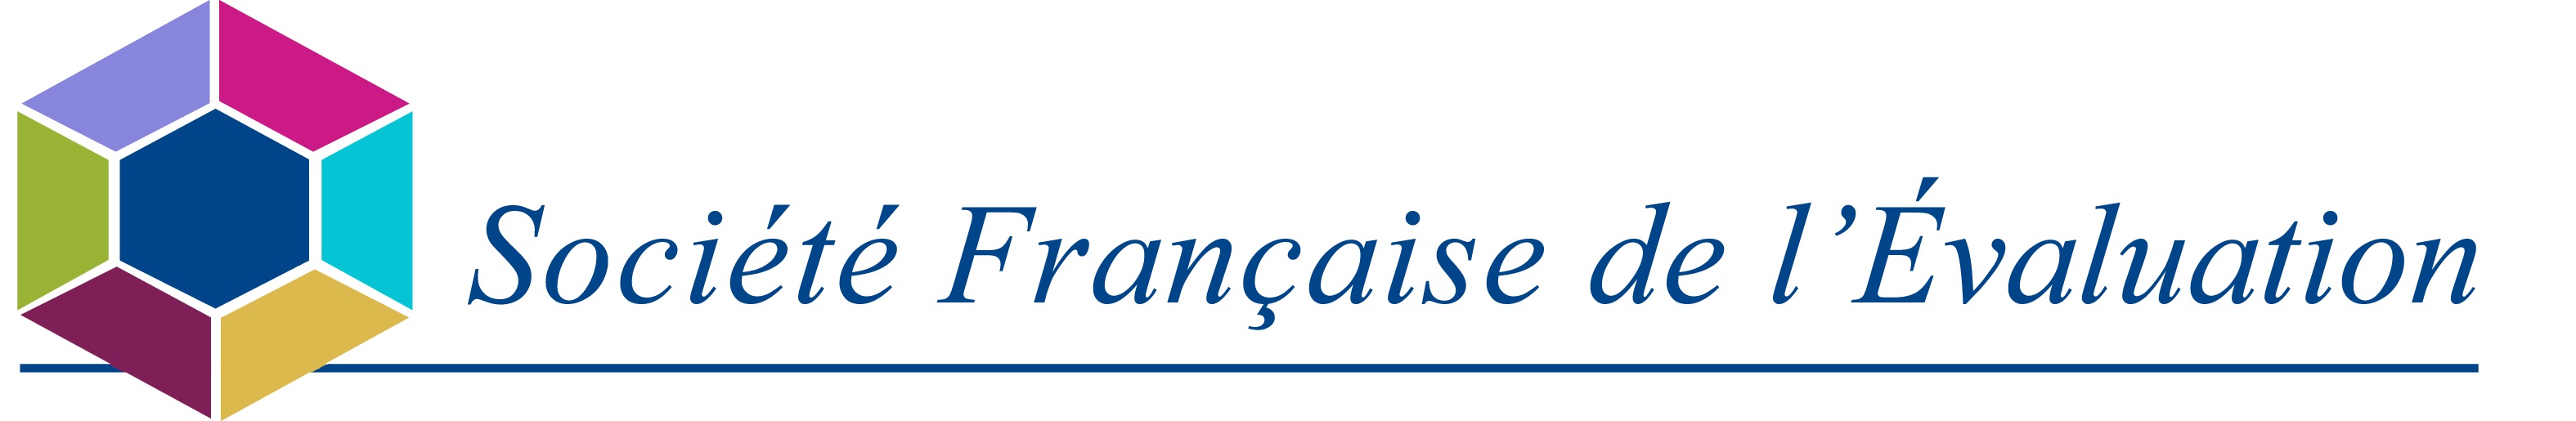 SFE - Société Française de l'Evaluation